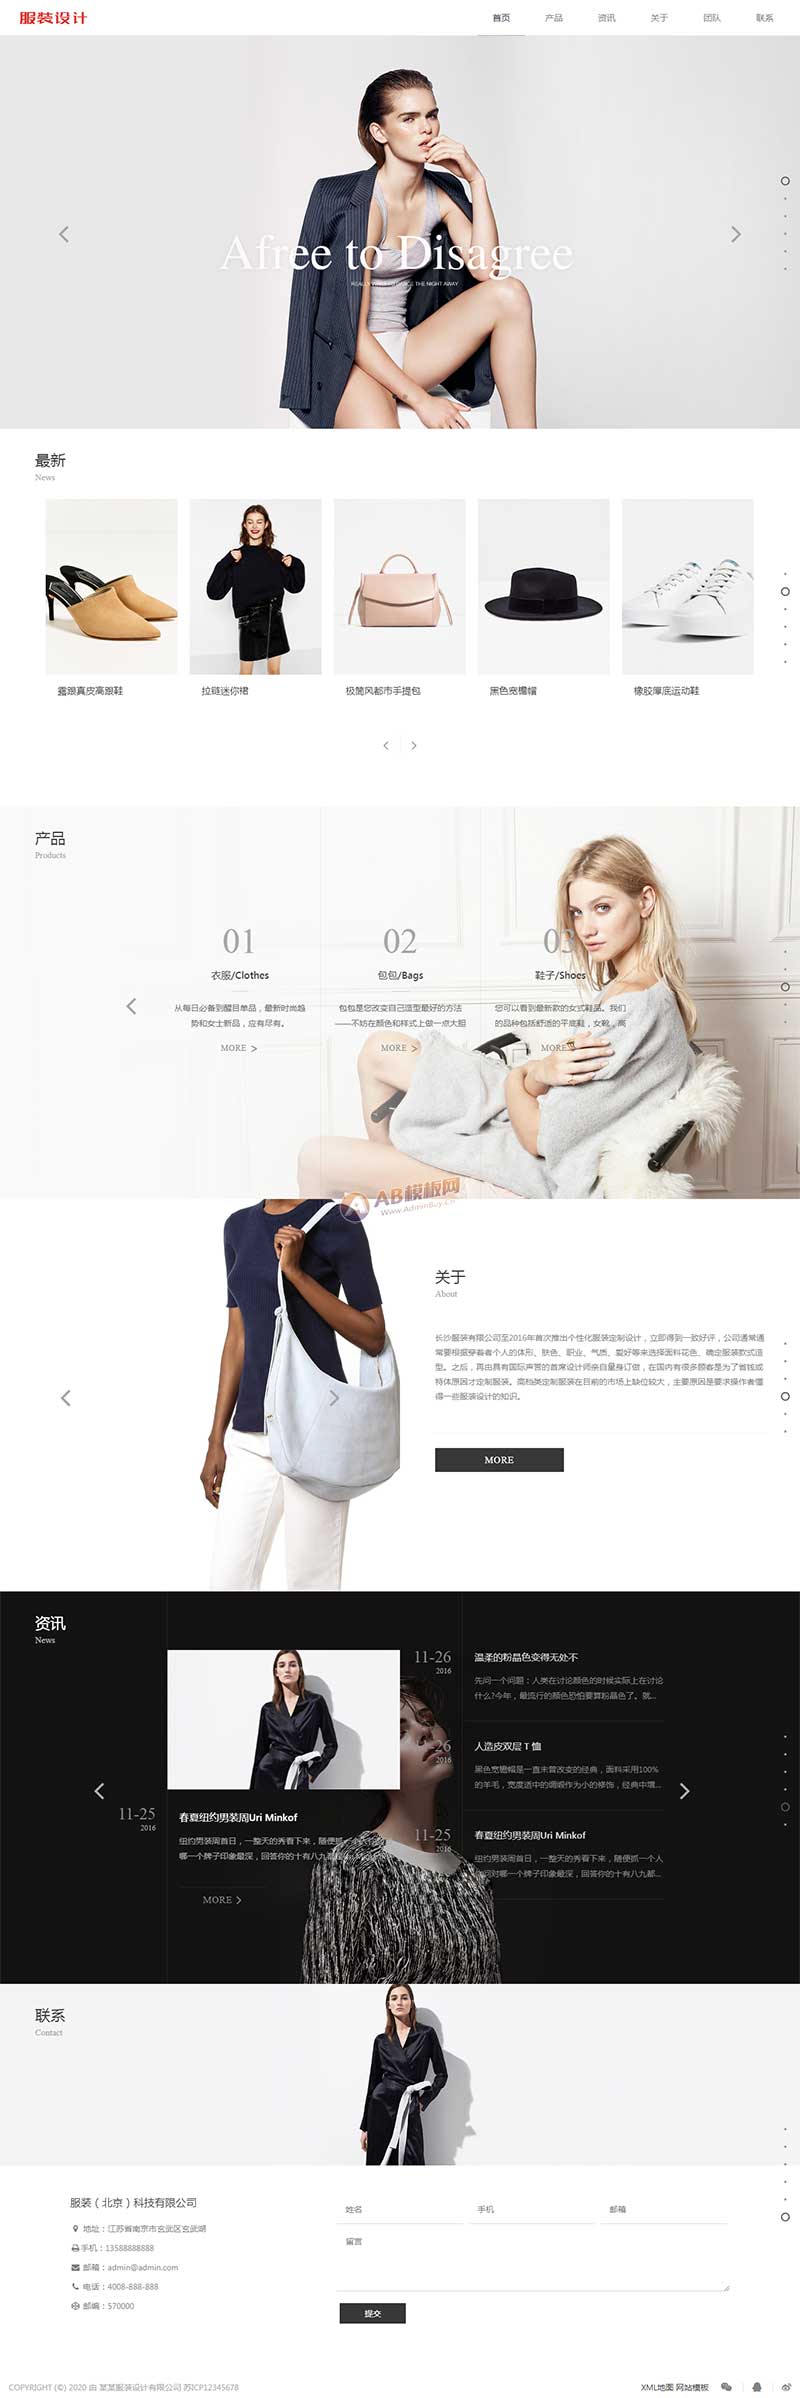 (自适应移动端)响应式创意滚屏摄影服装服饰网站源码 HTML5品牌女装网站模板插图